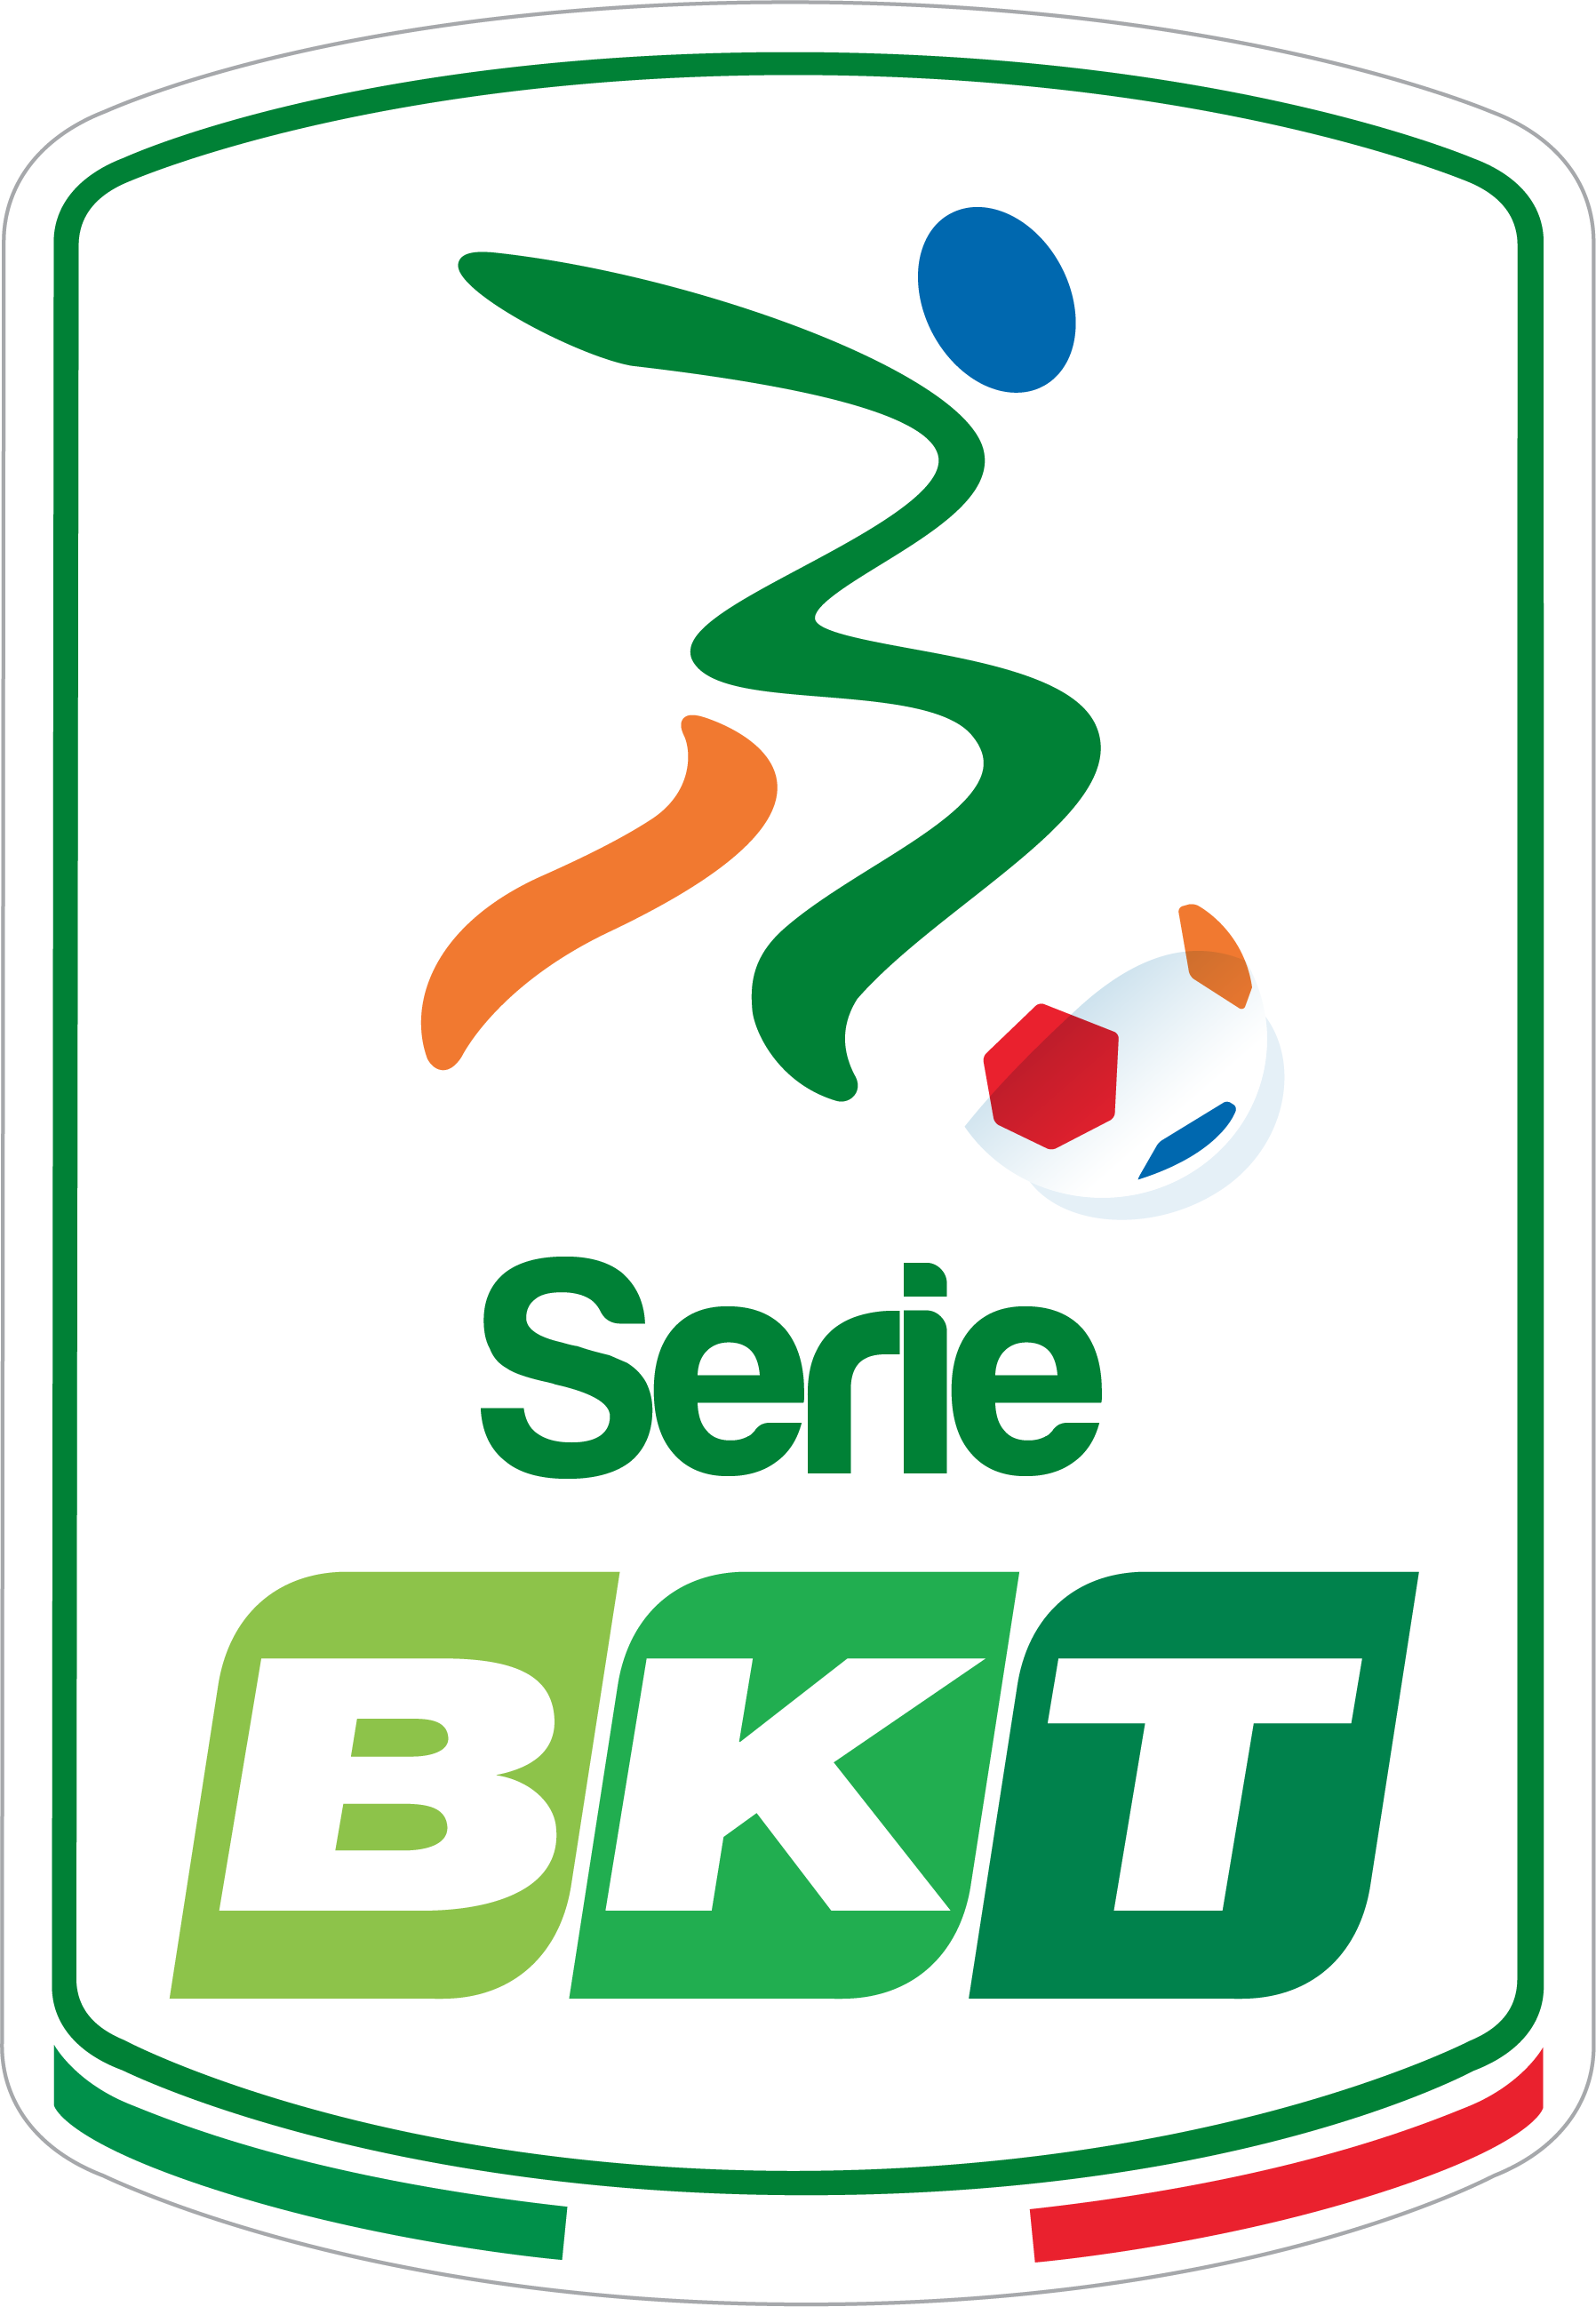 Alessandria-Brescia si disputerà l’11 settembre alle 14.